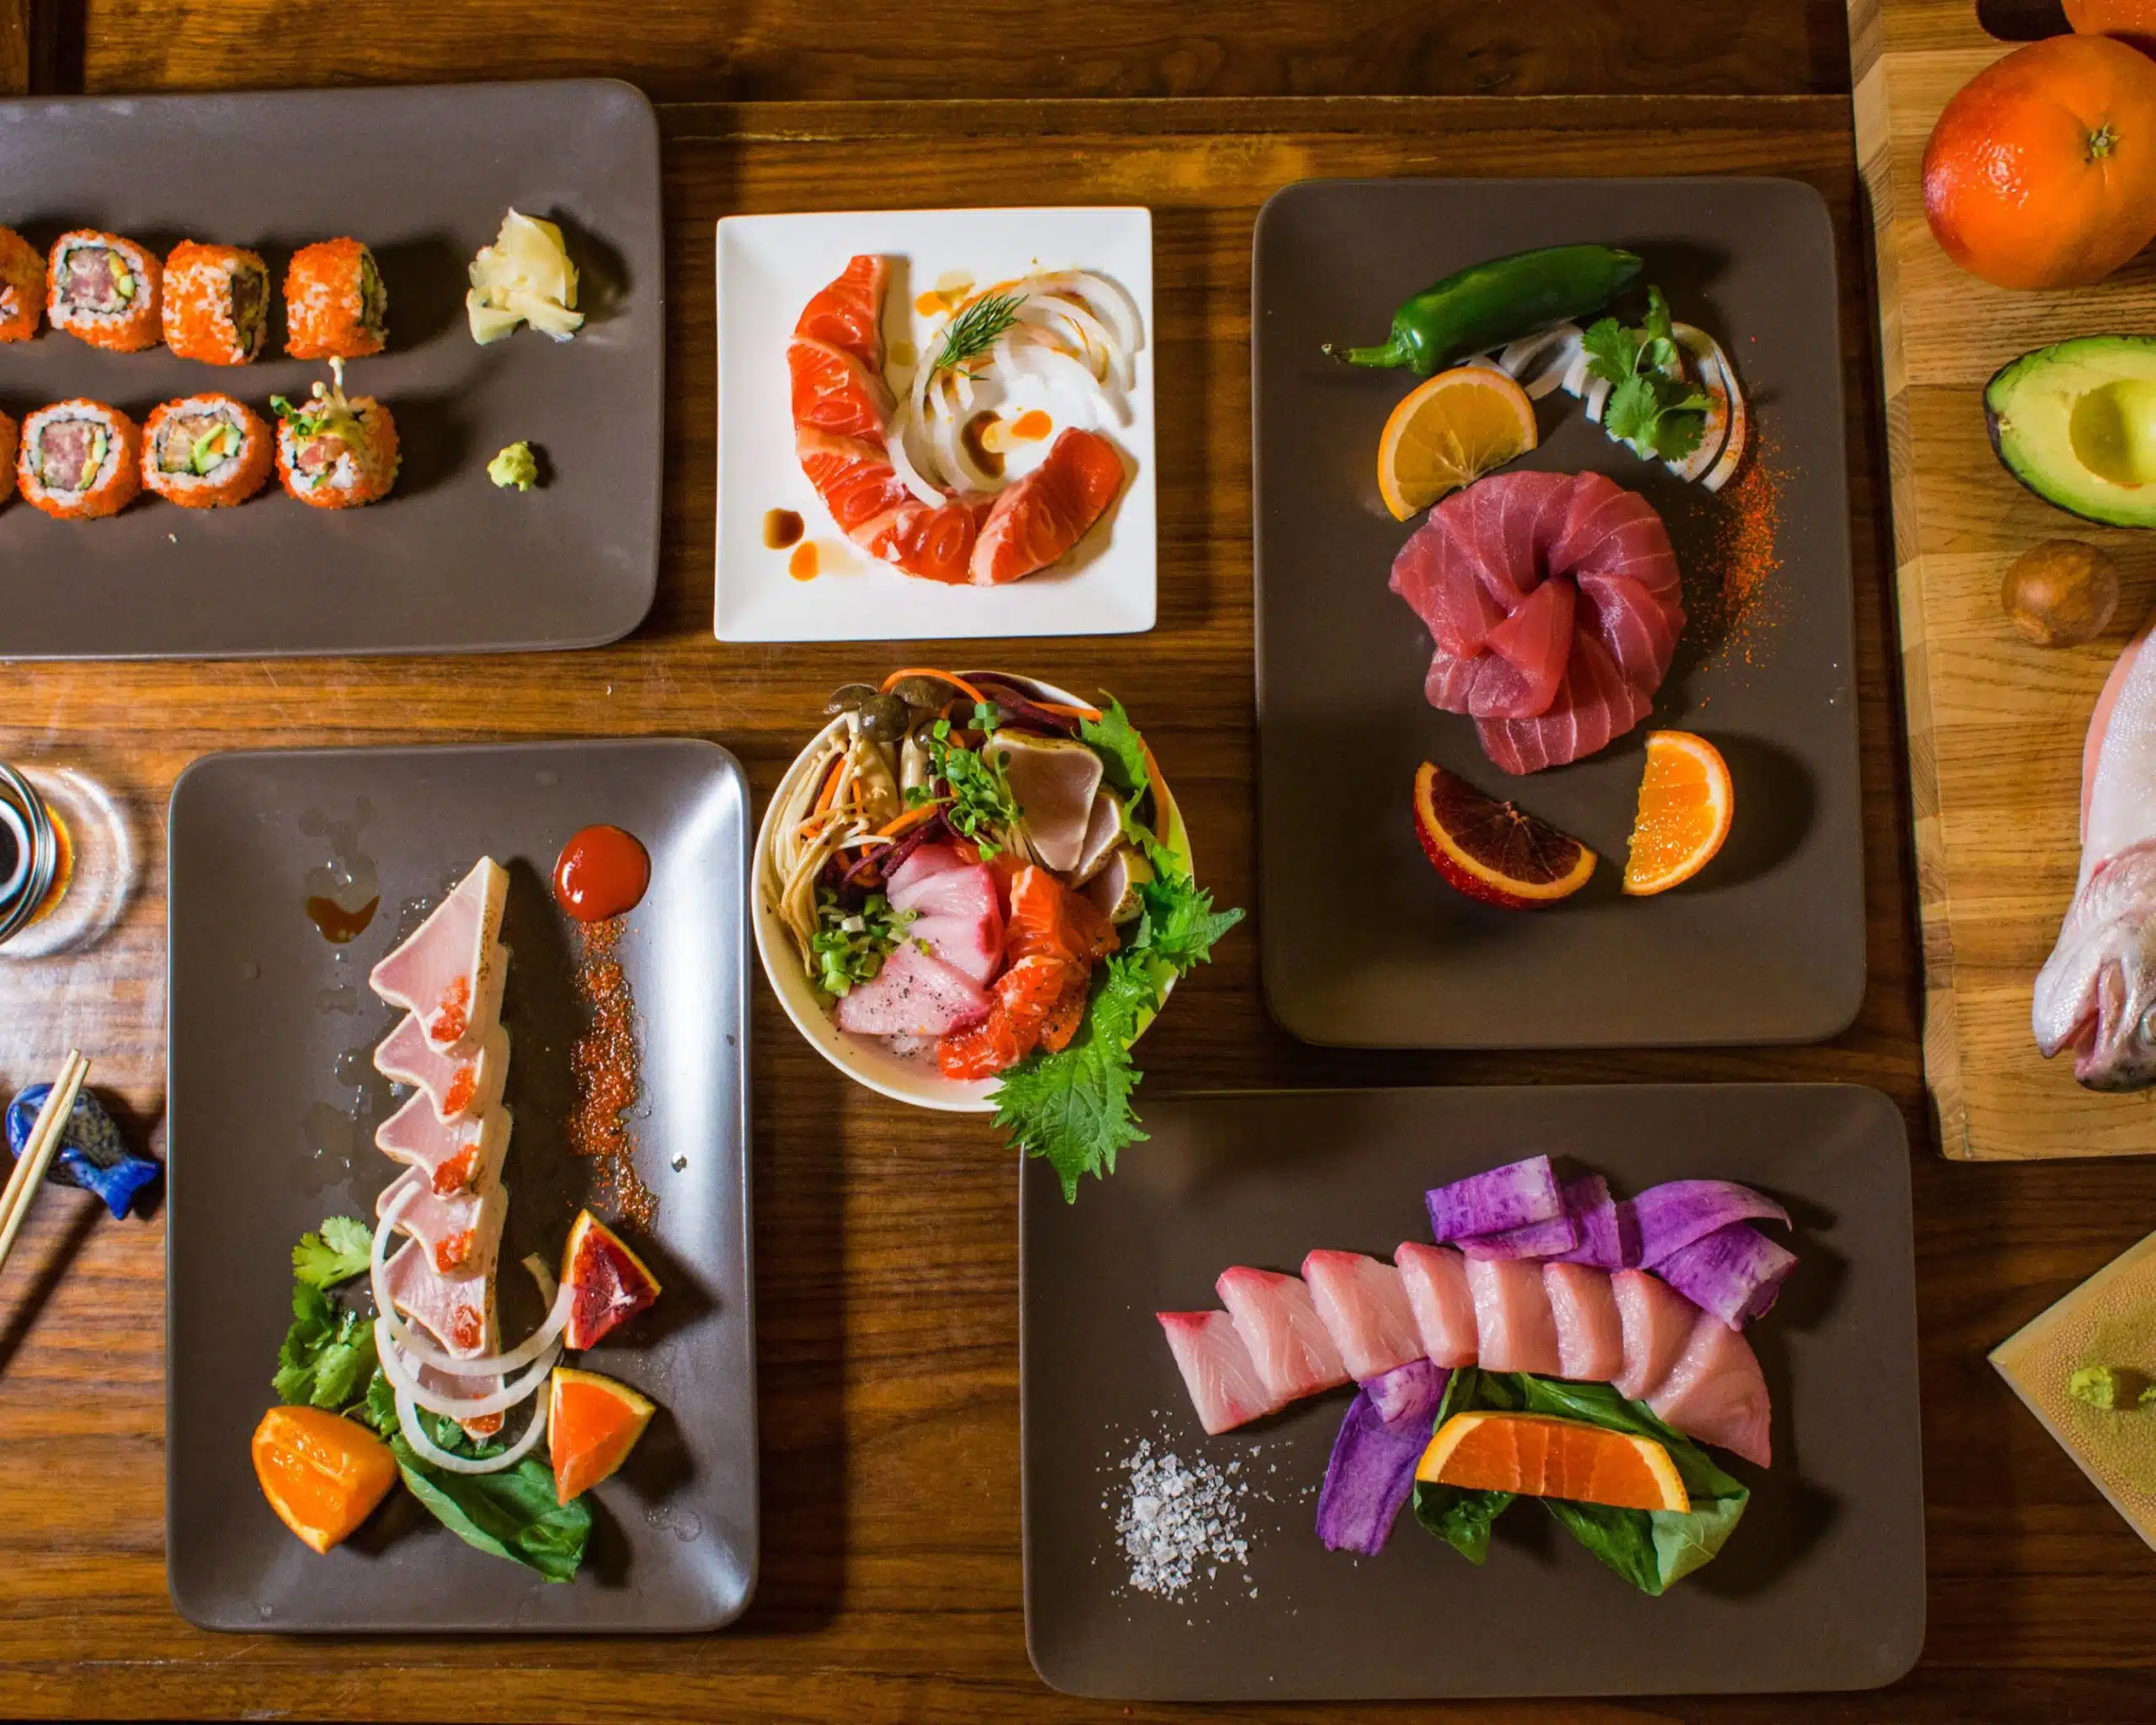 Full table of sushi at Umami Sushi, best sushi West Village